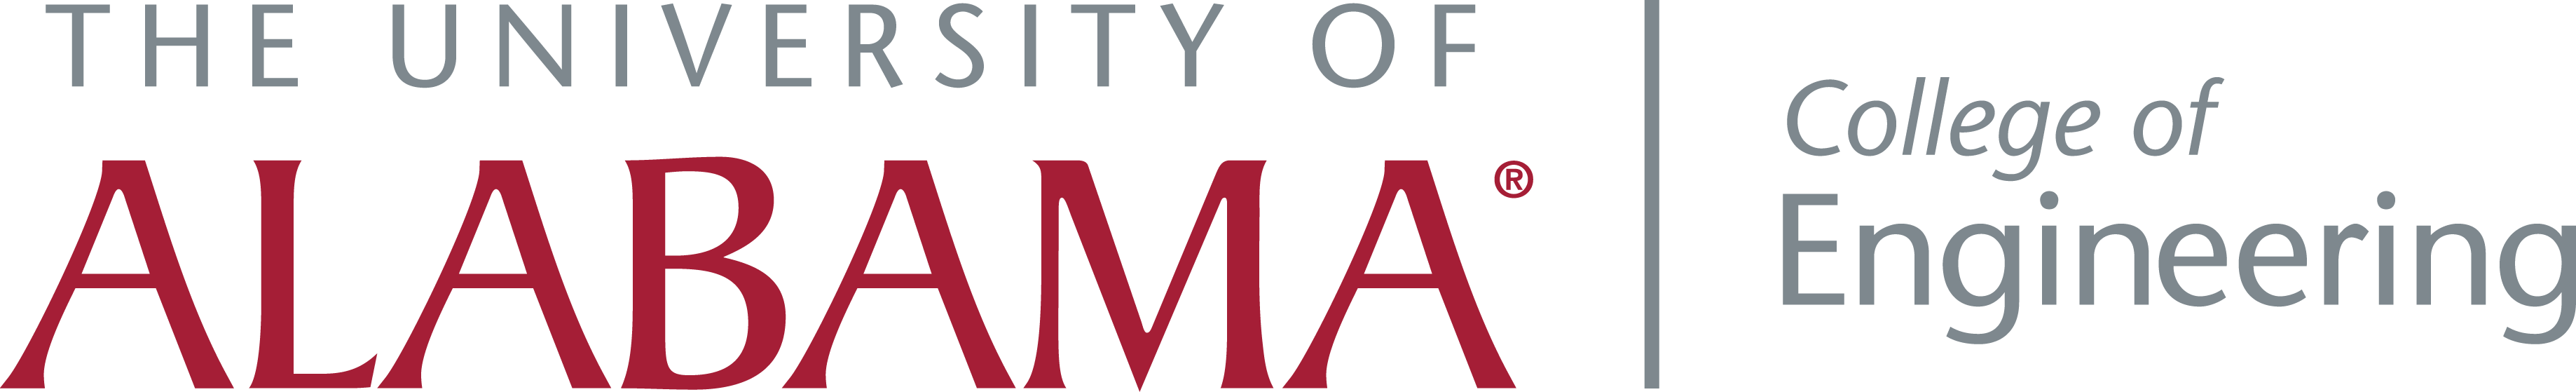 University of Alabama Logo - Logos & Wordmarks. Division of Strategic Communications